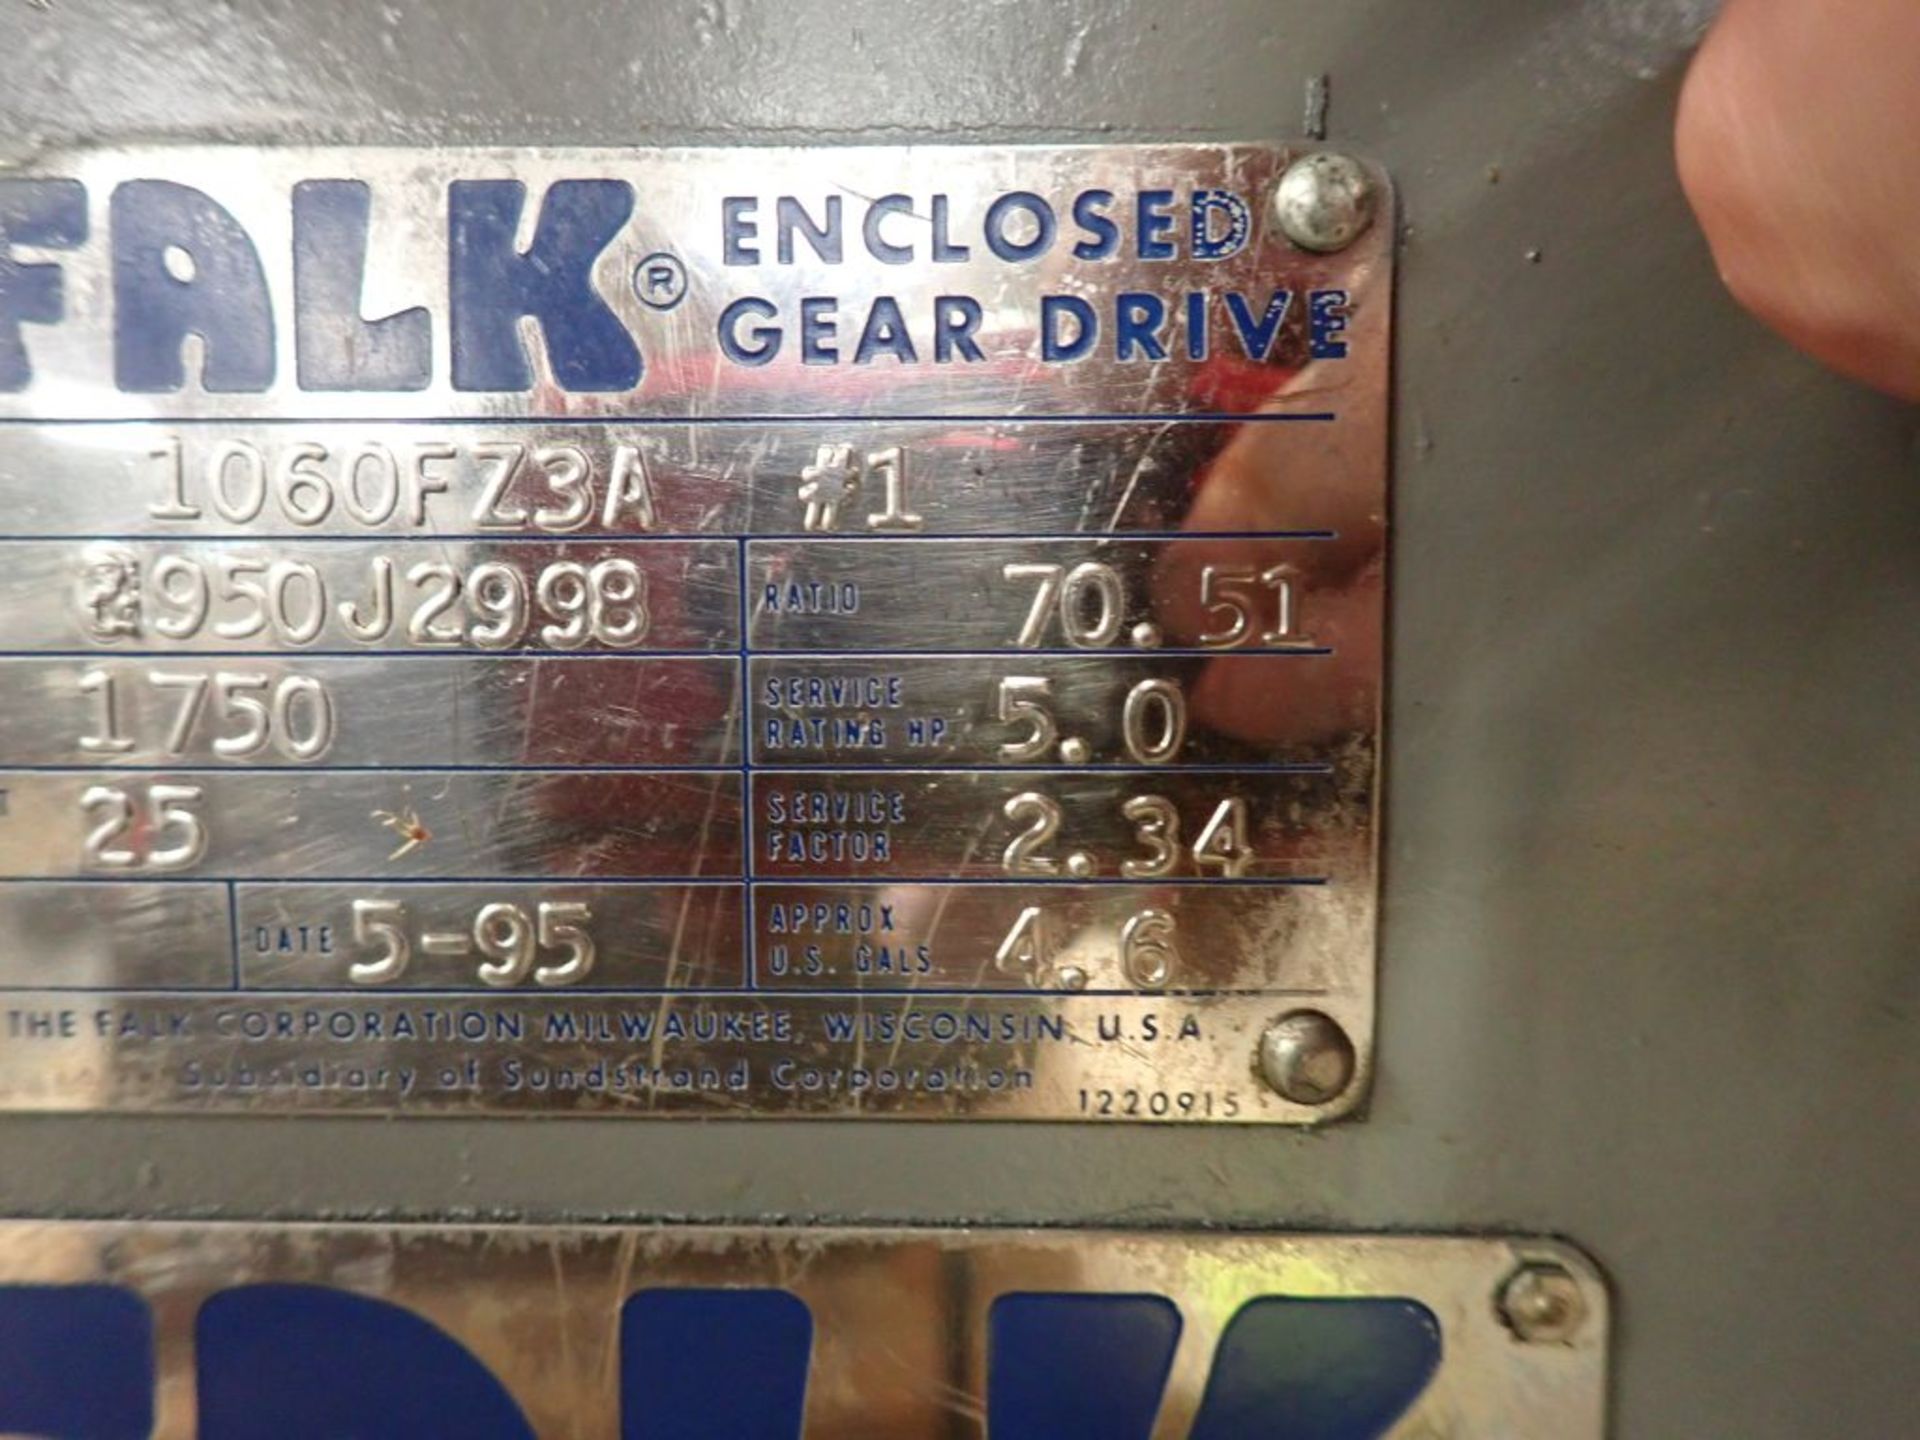 Falk Enclosed Gear Drive - Model No. 1060F23A; 70.51 Ratio; Tag: 215727 - Image 14 of 14